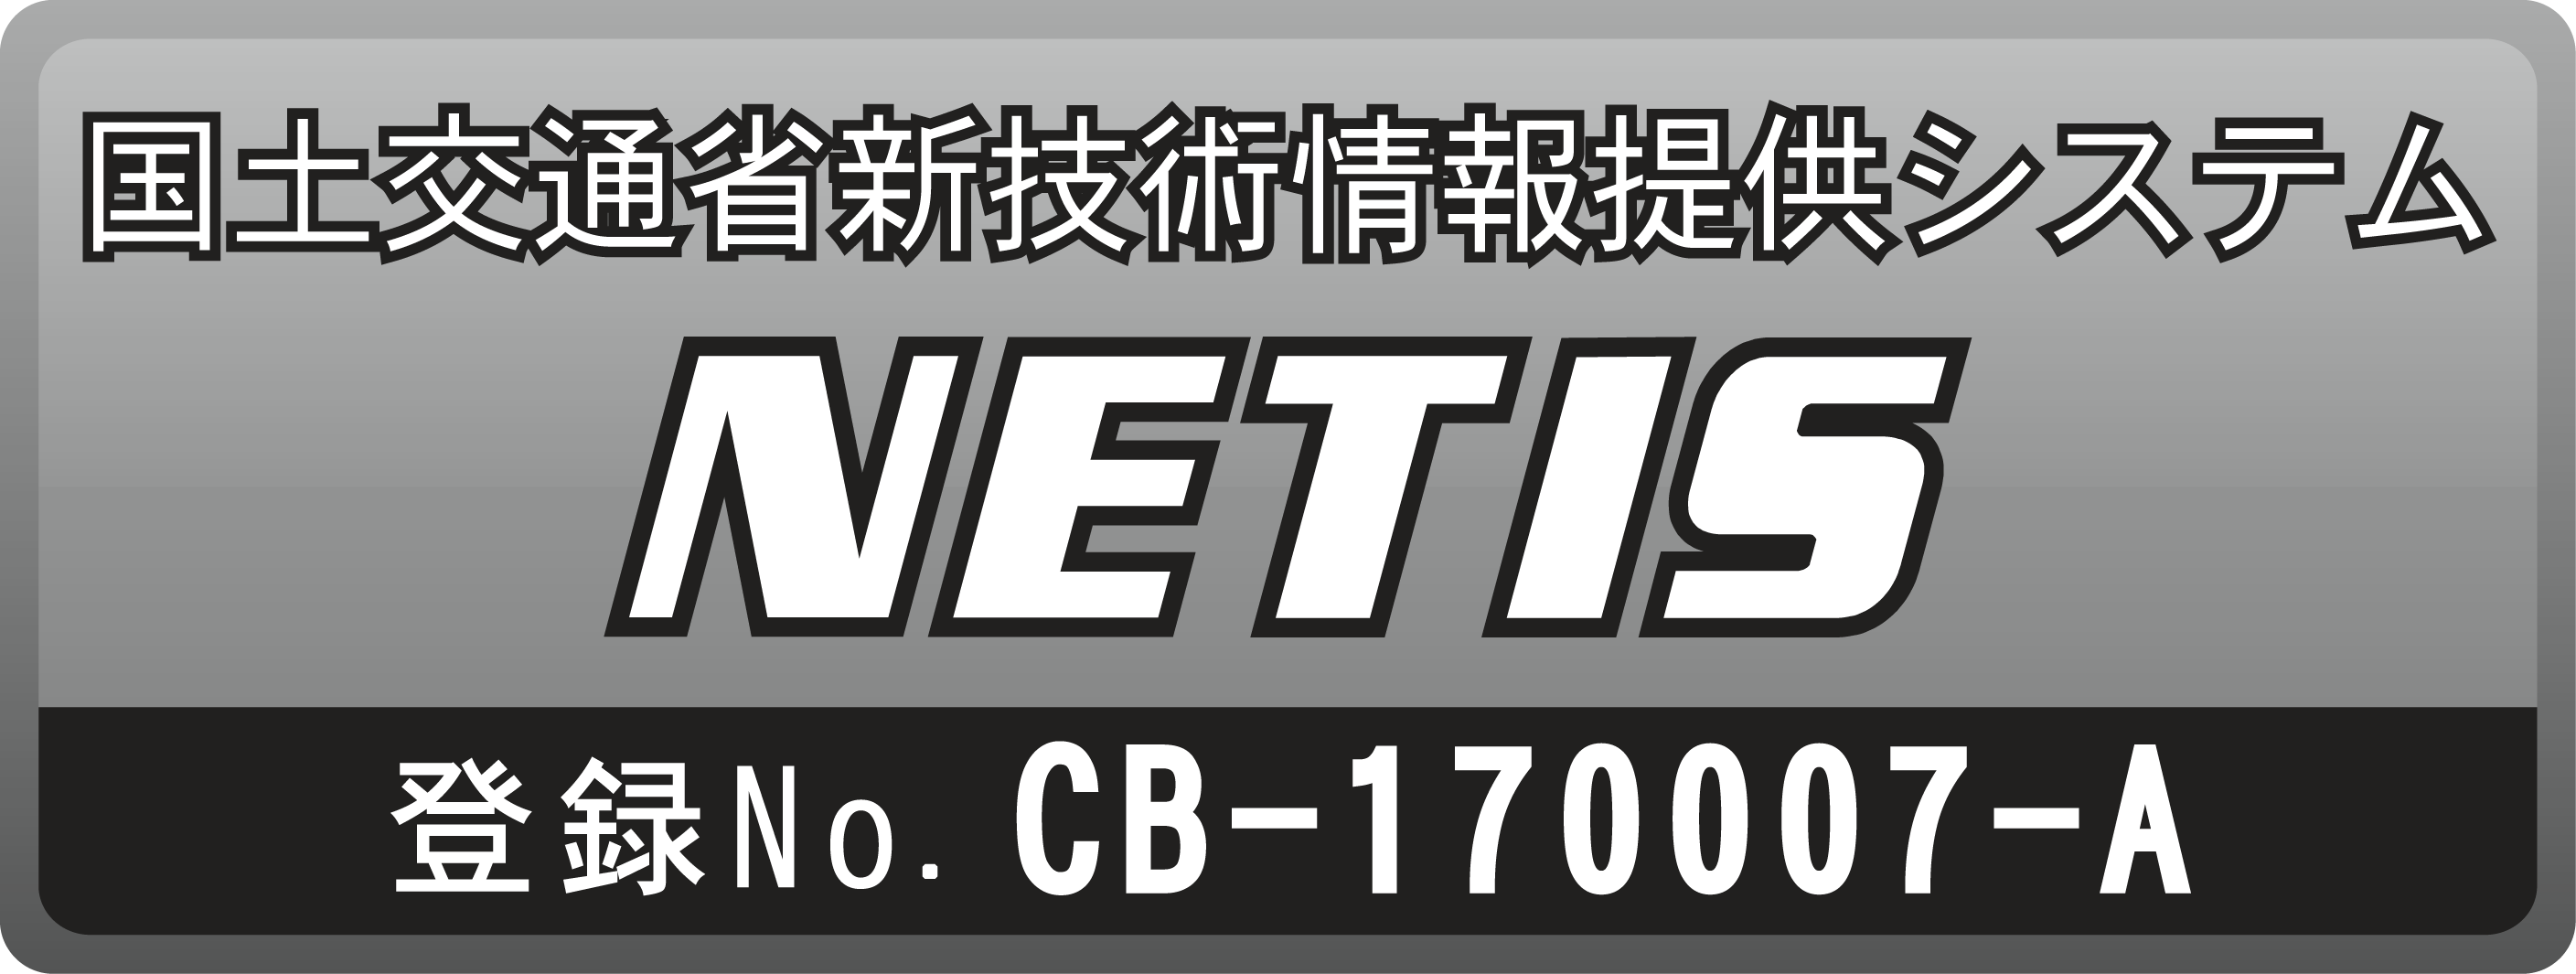 ｅフレーム NETIS CB-17007-A